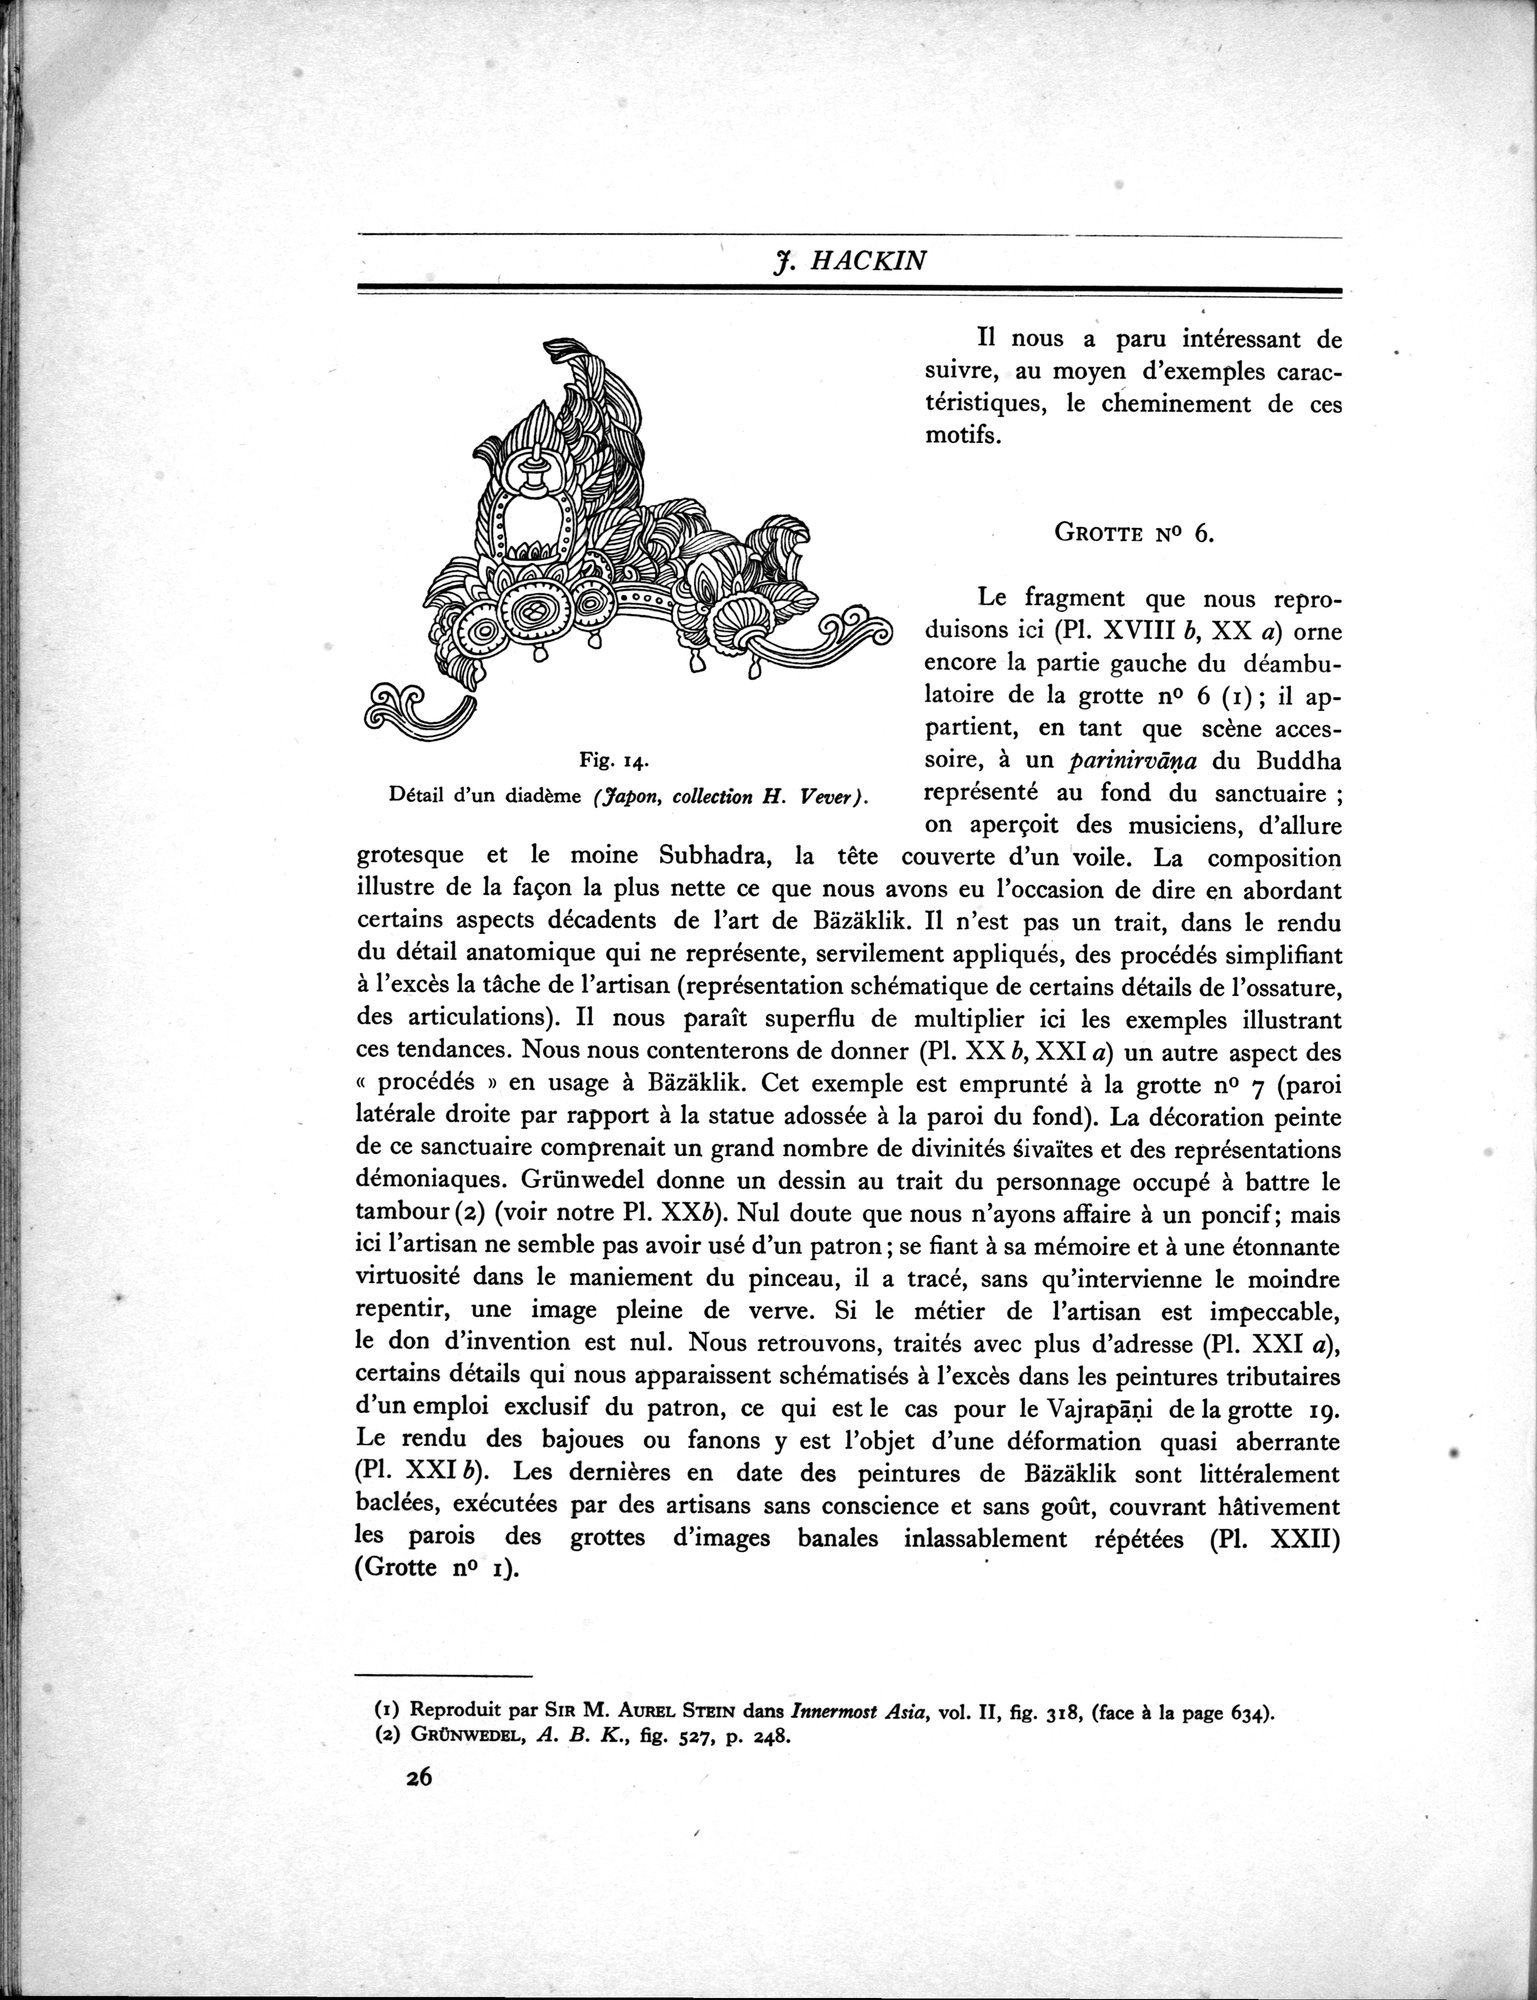 Recherches Archéologiques en Asie Centrale (1931) : vol.1 / Page 36 (Grayscale High Resolution Image)